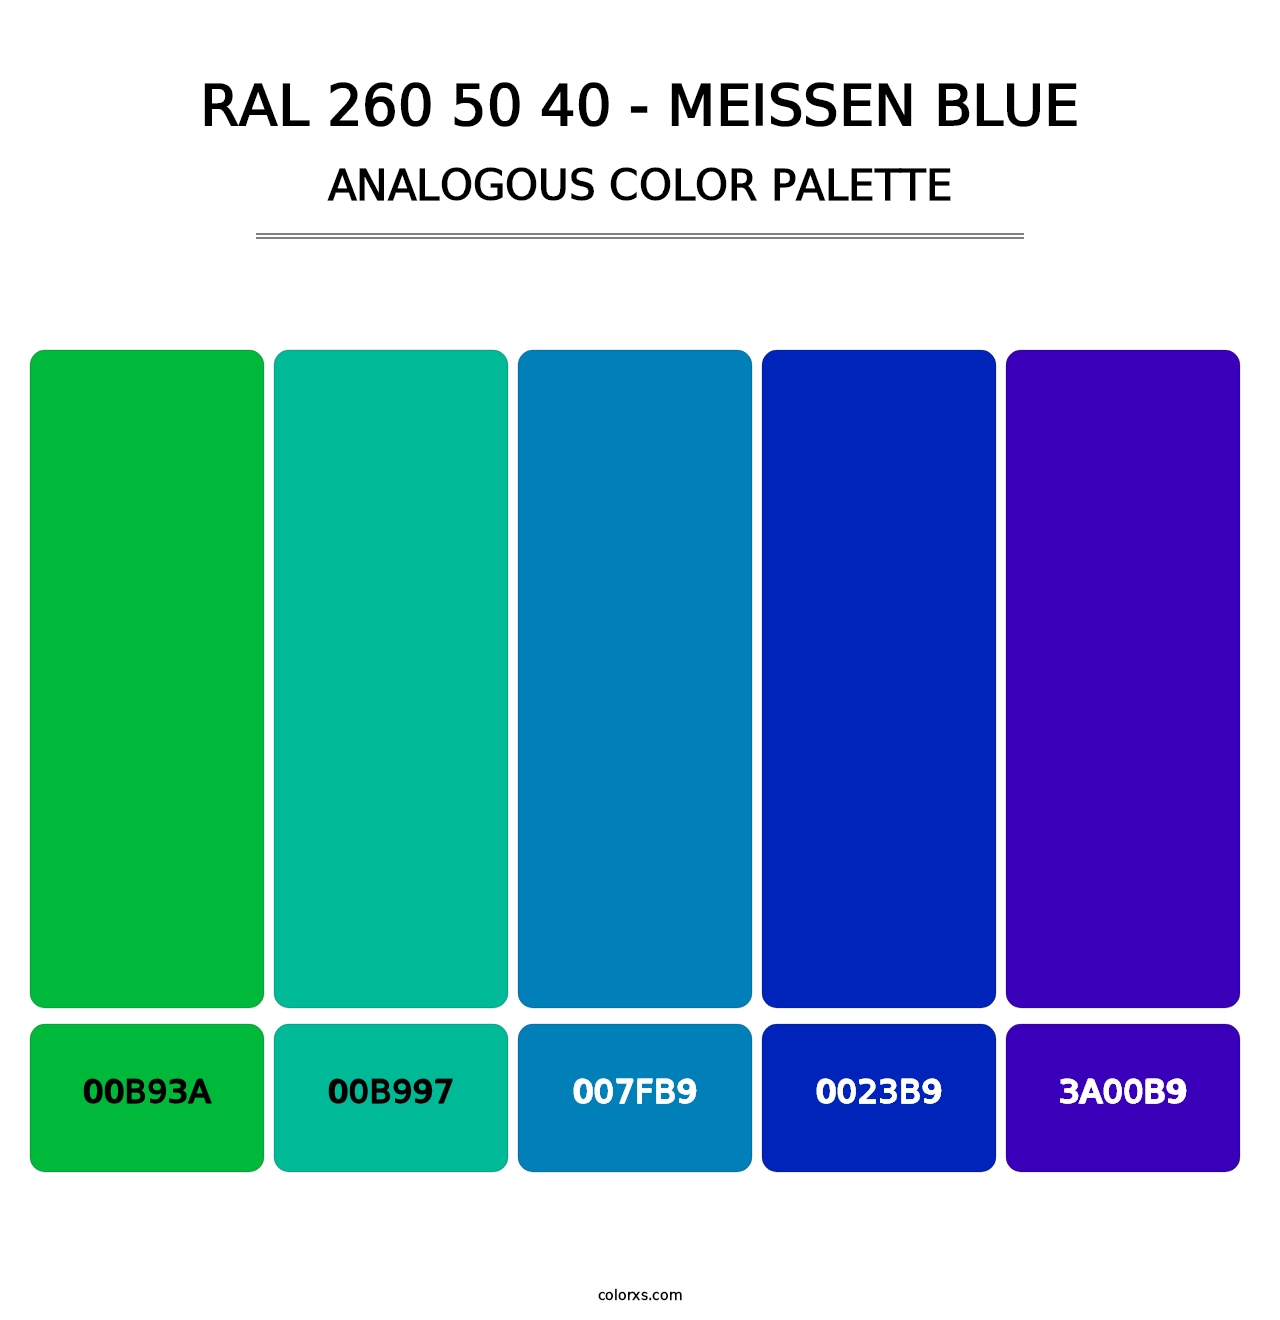 RAL 260 50 40 - Meissen Blue - Analogous Color Palette